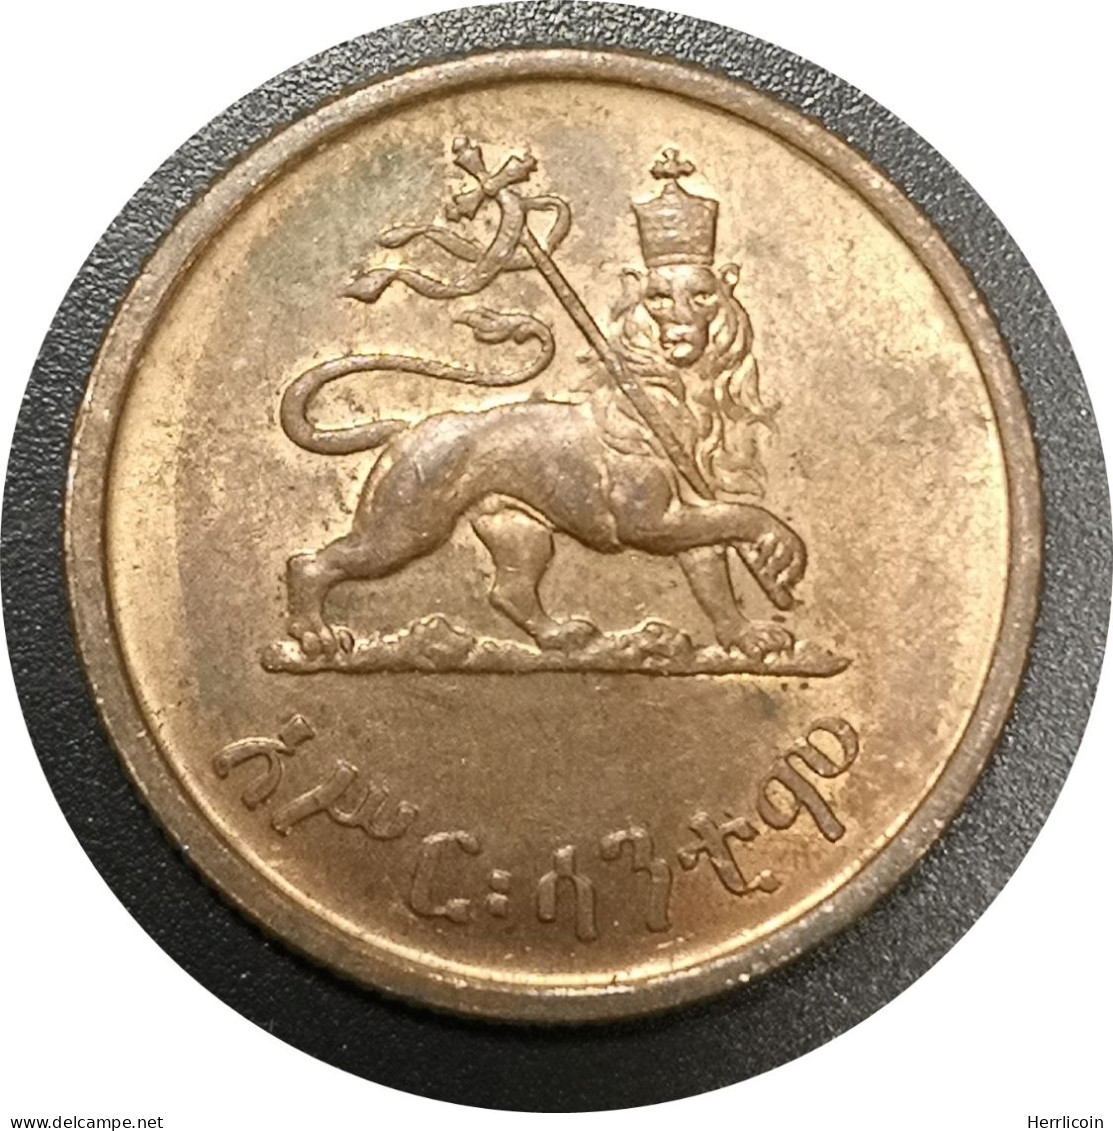 Monnaie Ethiopie - 1936 (1945 - 1975) 10 Santeem - Hailé Selassié I - Aethiopien